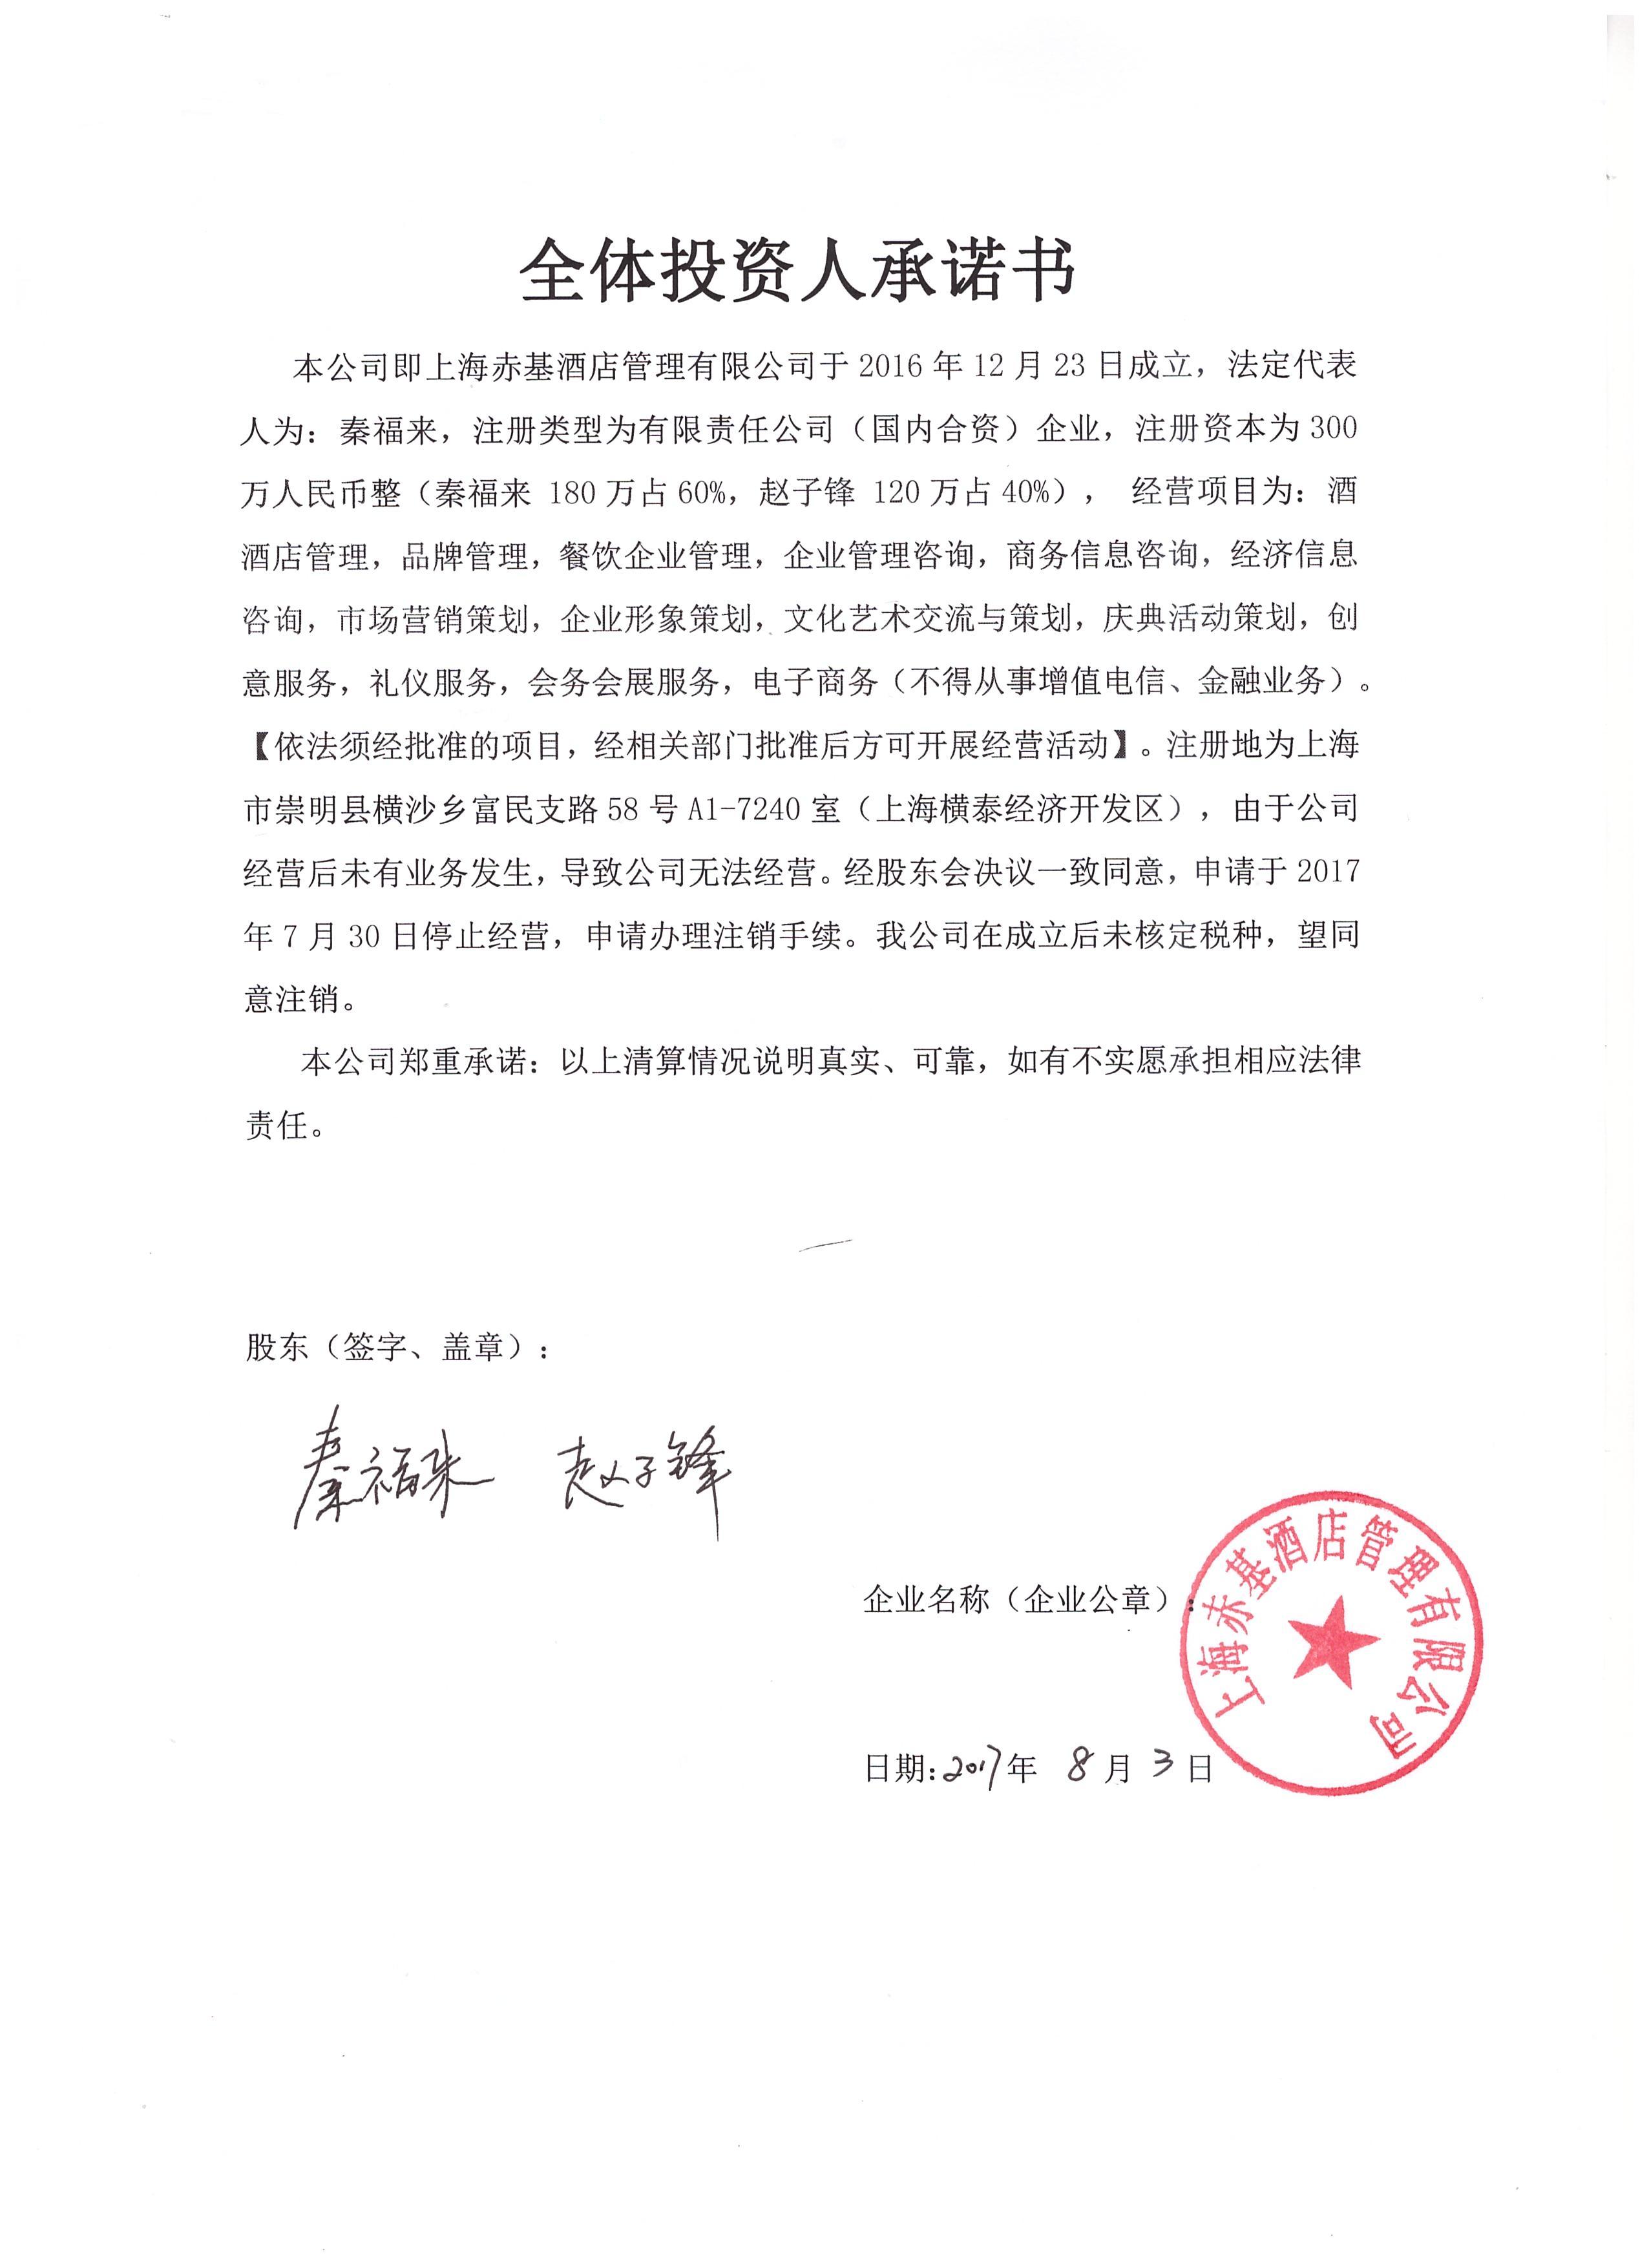 企业公告信息 企业名称 上海赤基酒店管理有限公司 统一社会信用代码